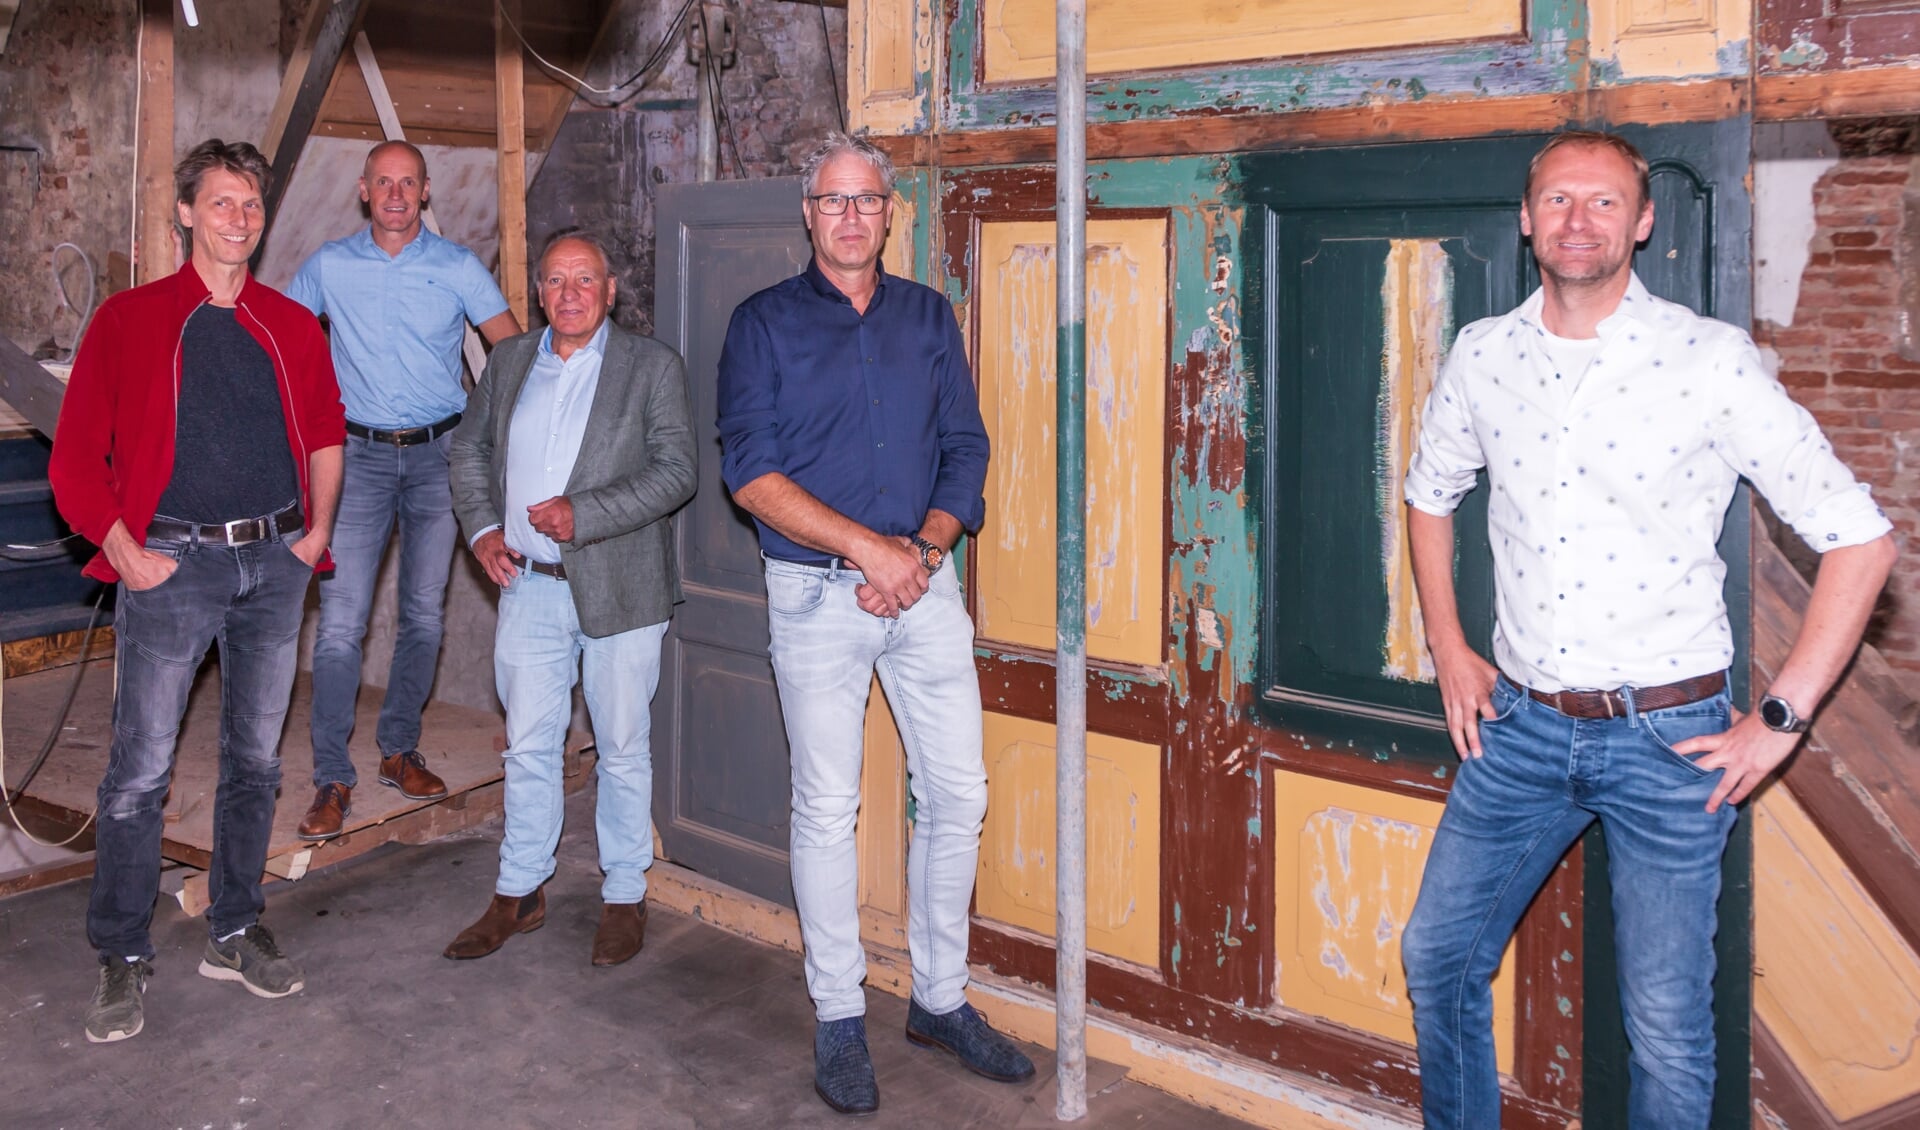 Gereed voor demontage en transport van de kastenwand. Behoud van zo’n zeldzaam stukje historisch Zutphen verdient aandacht. Foto: Henk Derksen